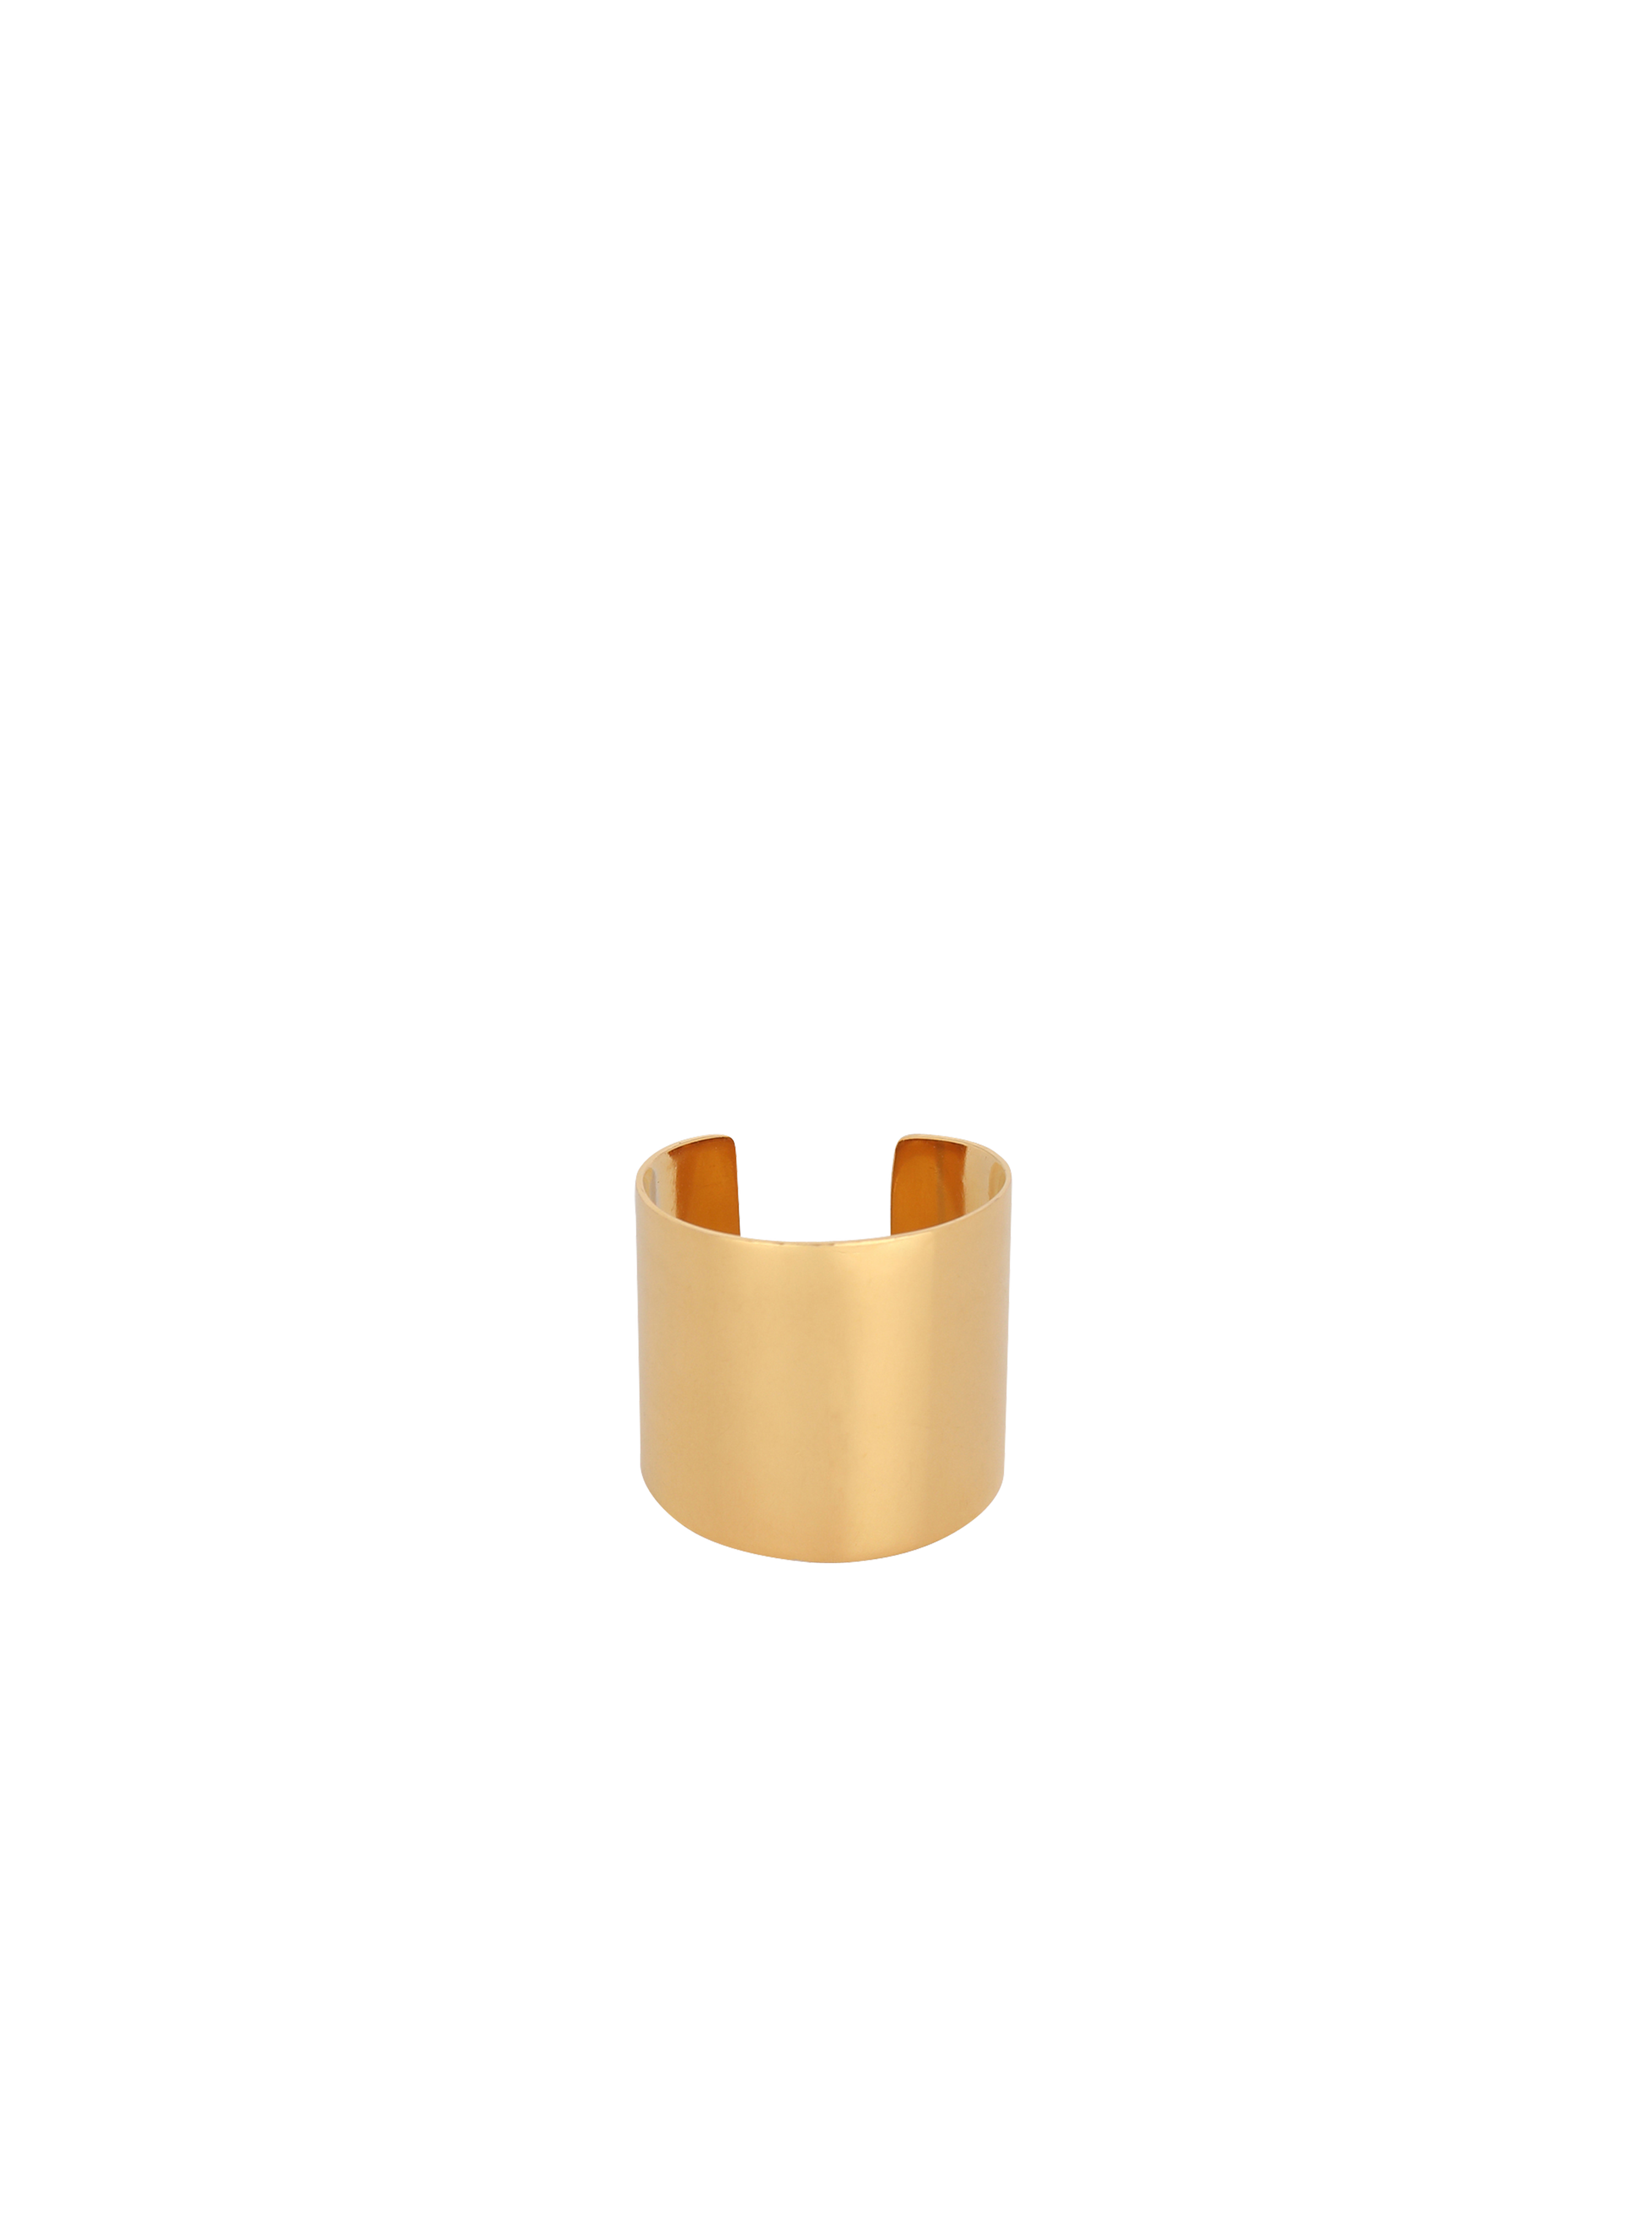 Tubular ring, gold